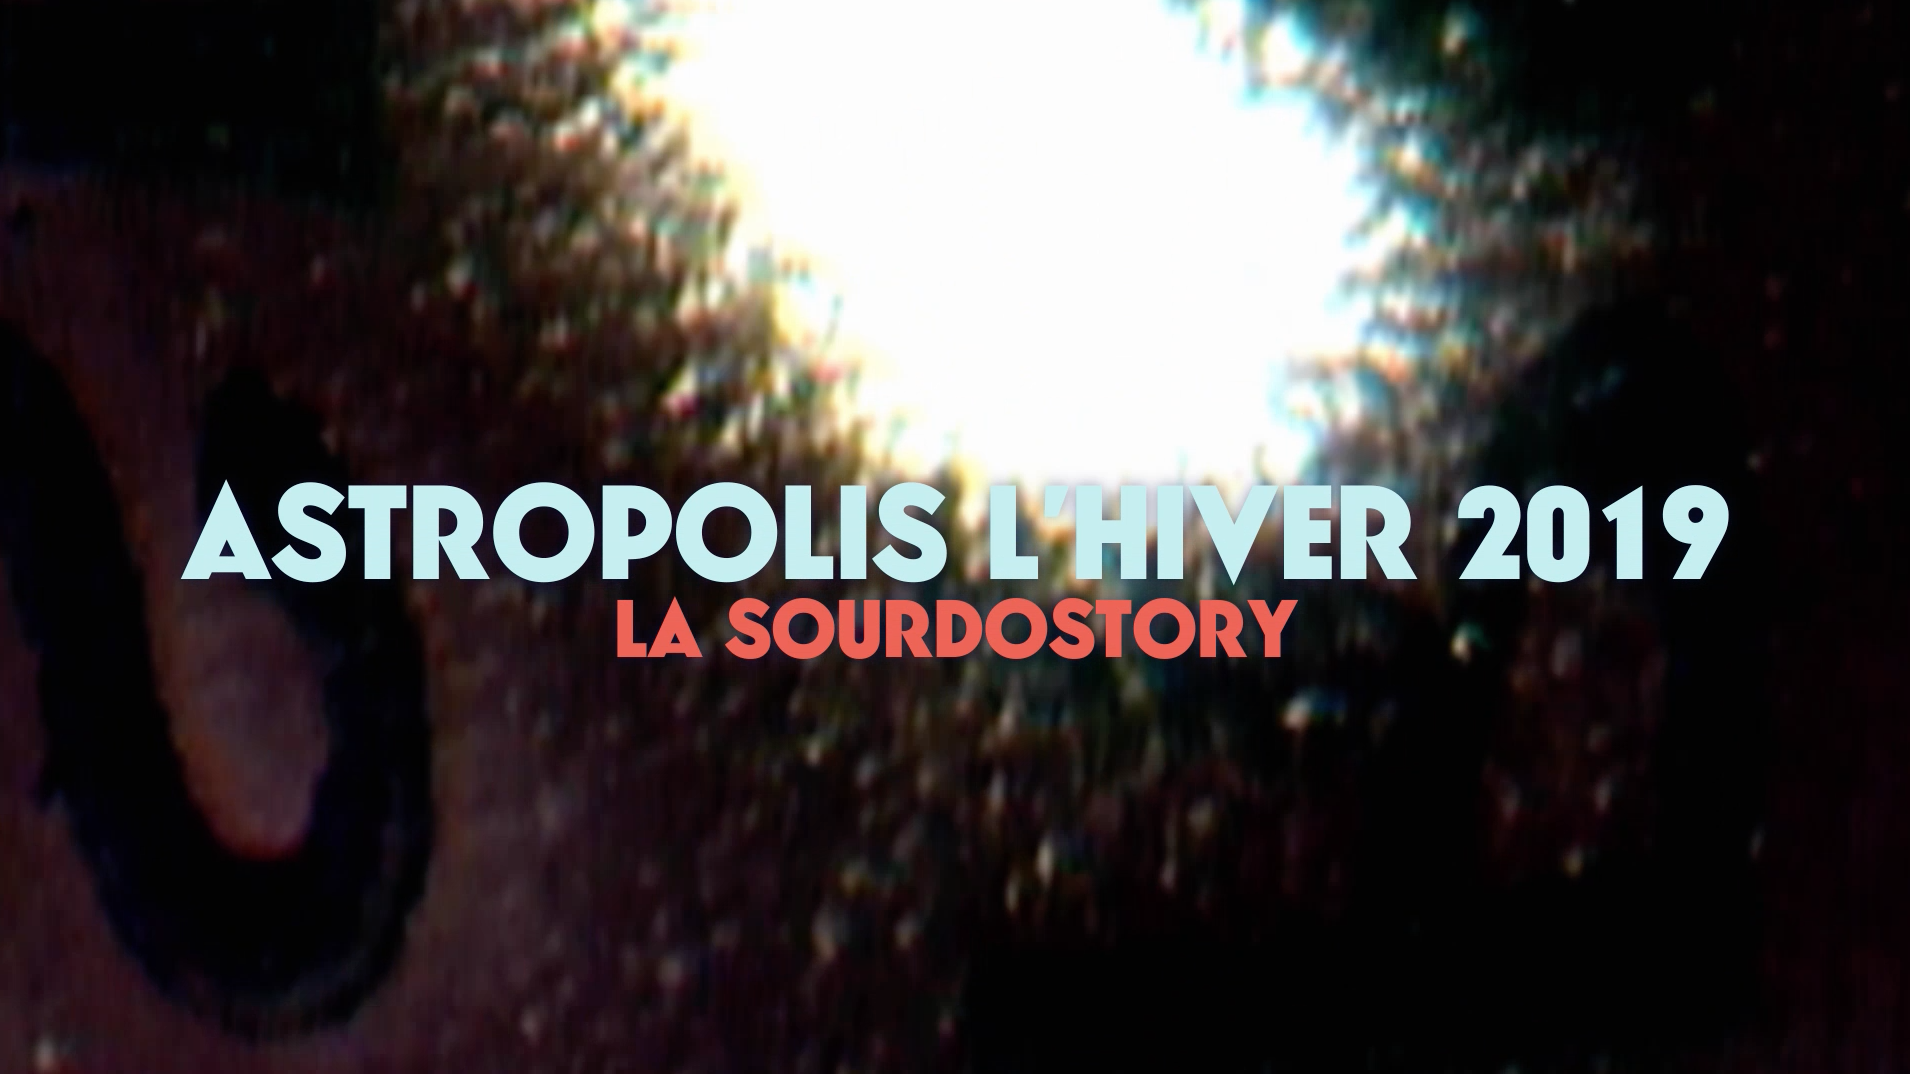 La Sourdostory Astropolis Lhiver Sourdoreille